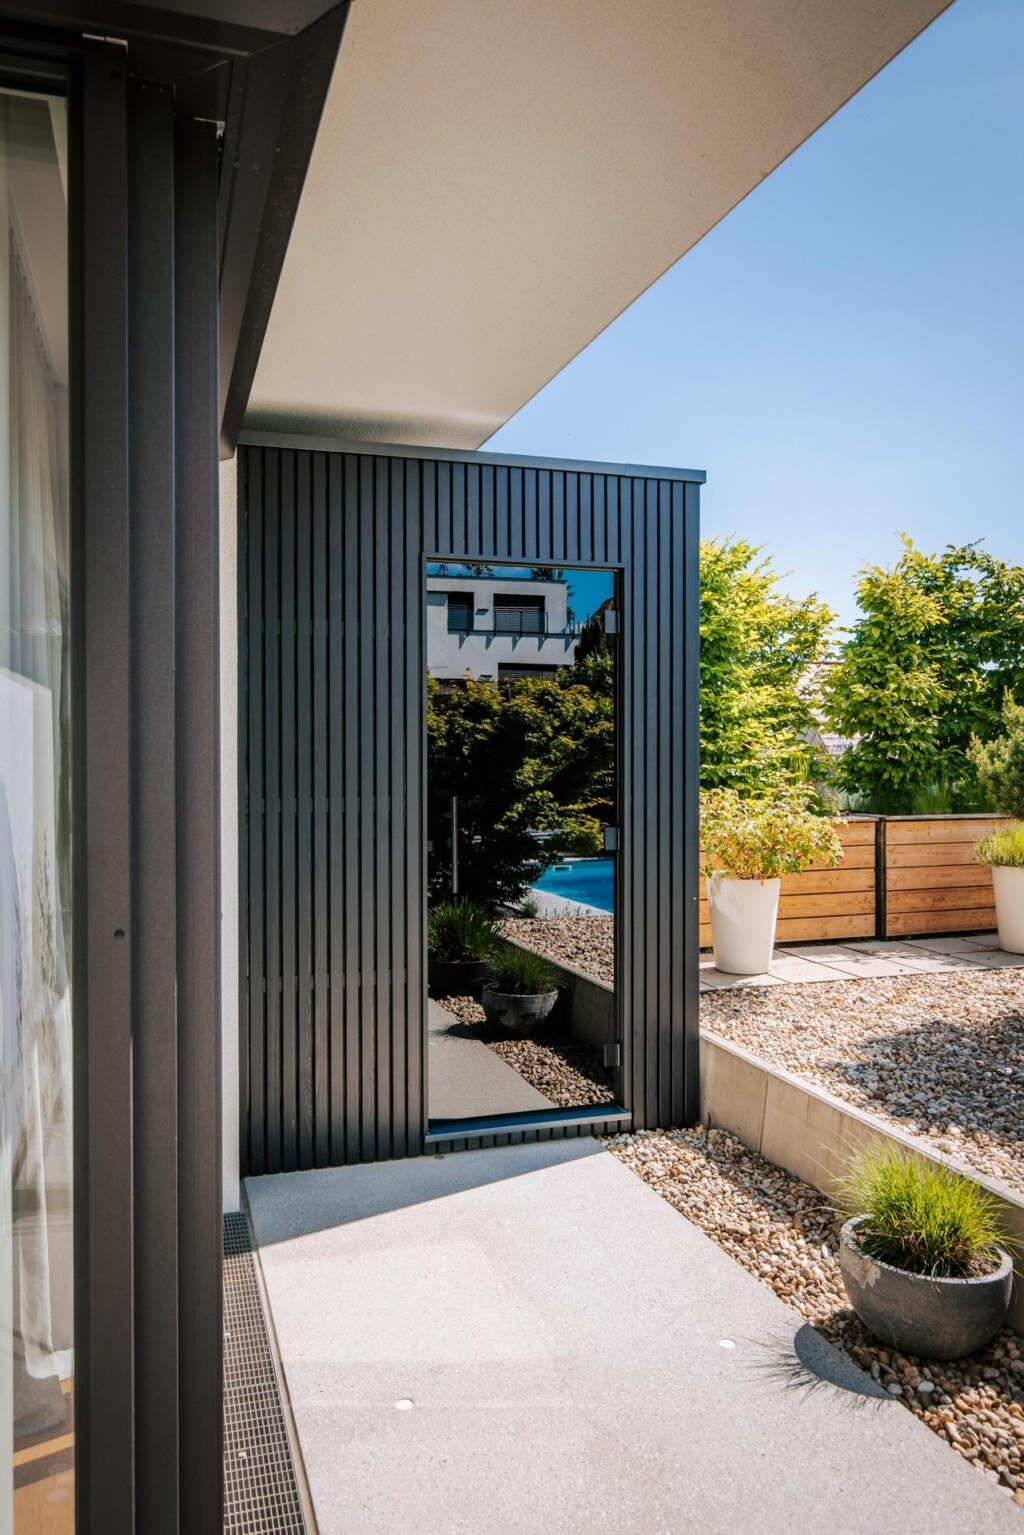 Kleine schwarze Außensauna in puristischem Design und mit verspiegelter Glastüre auf einer Terrasse in einem Steingarten.